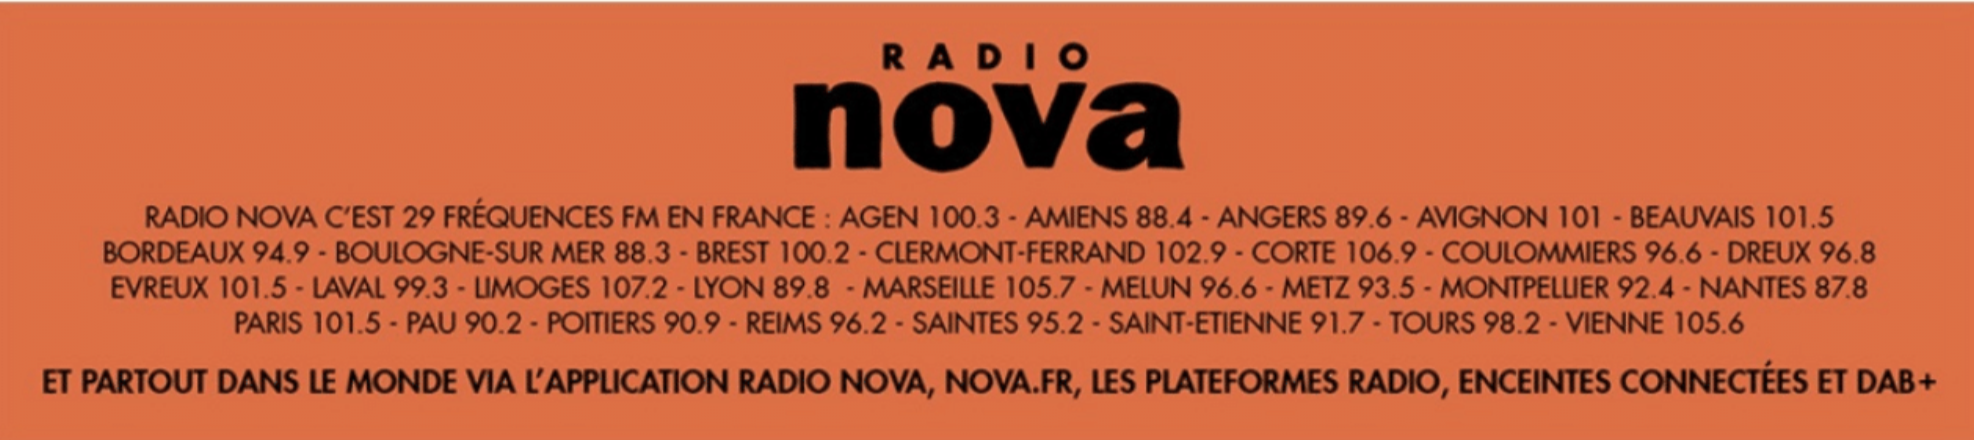 La collaboration entre Radio Nova et Believe est sur Longueur d'Ondes